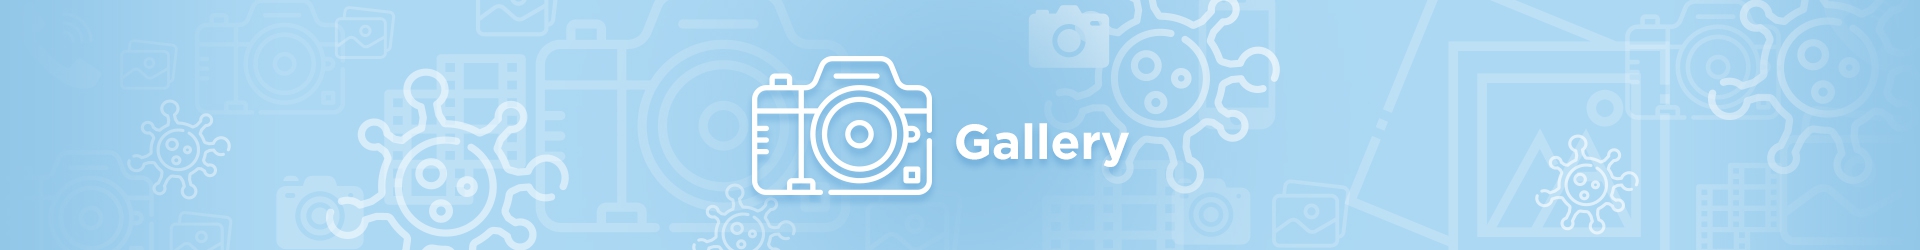 Gallery Inslider